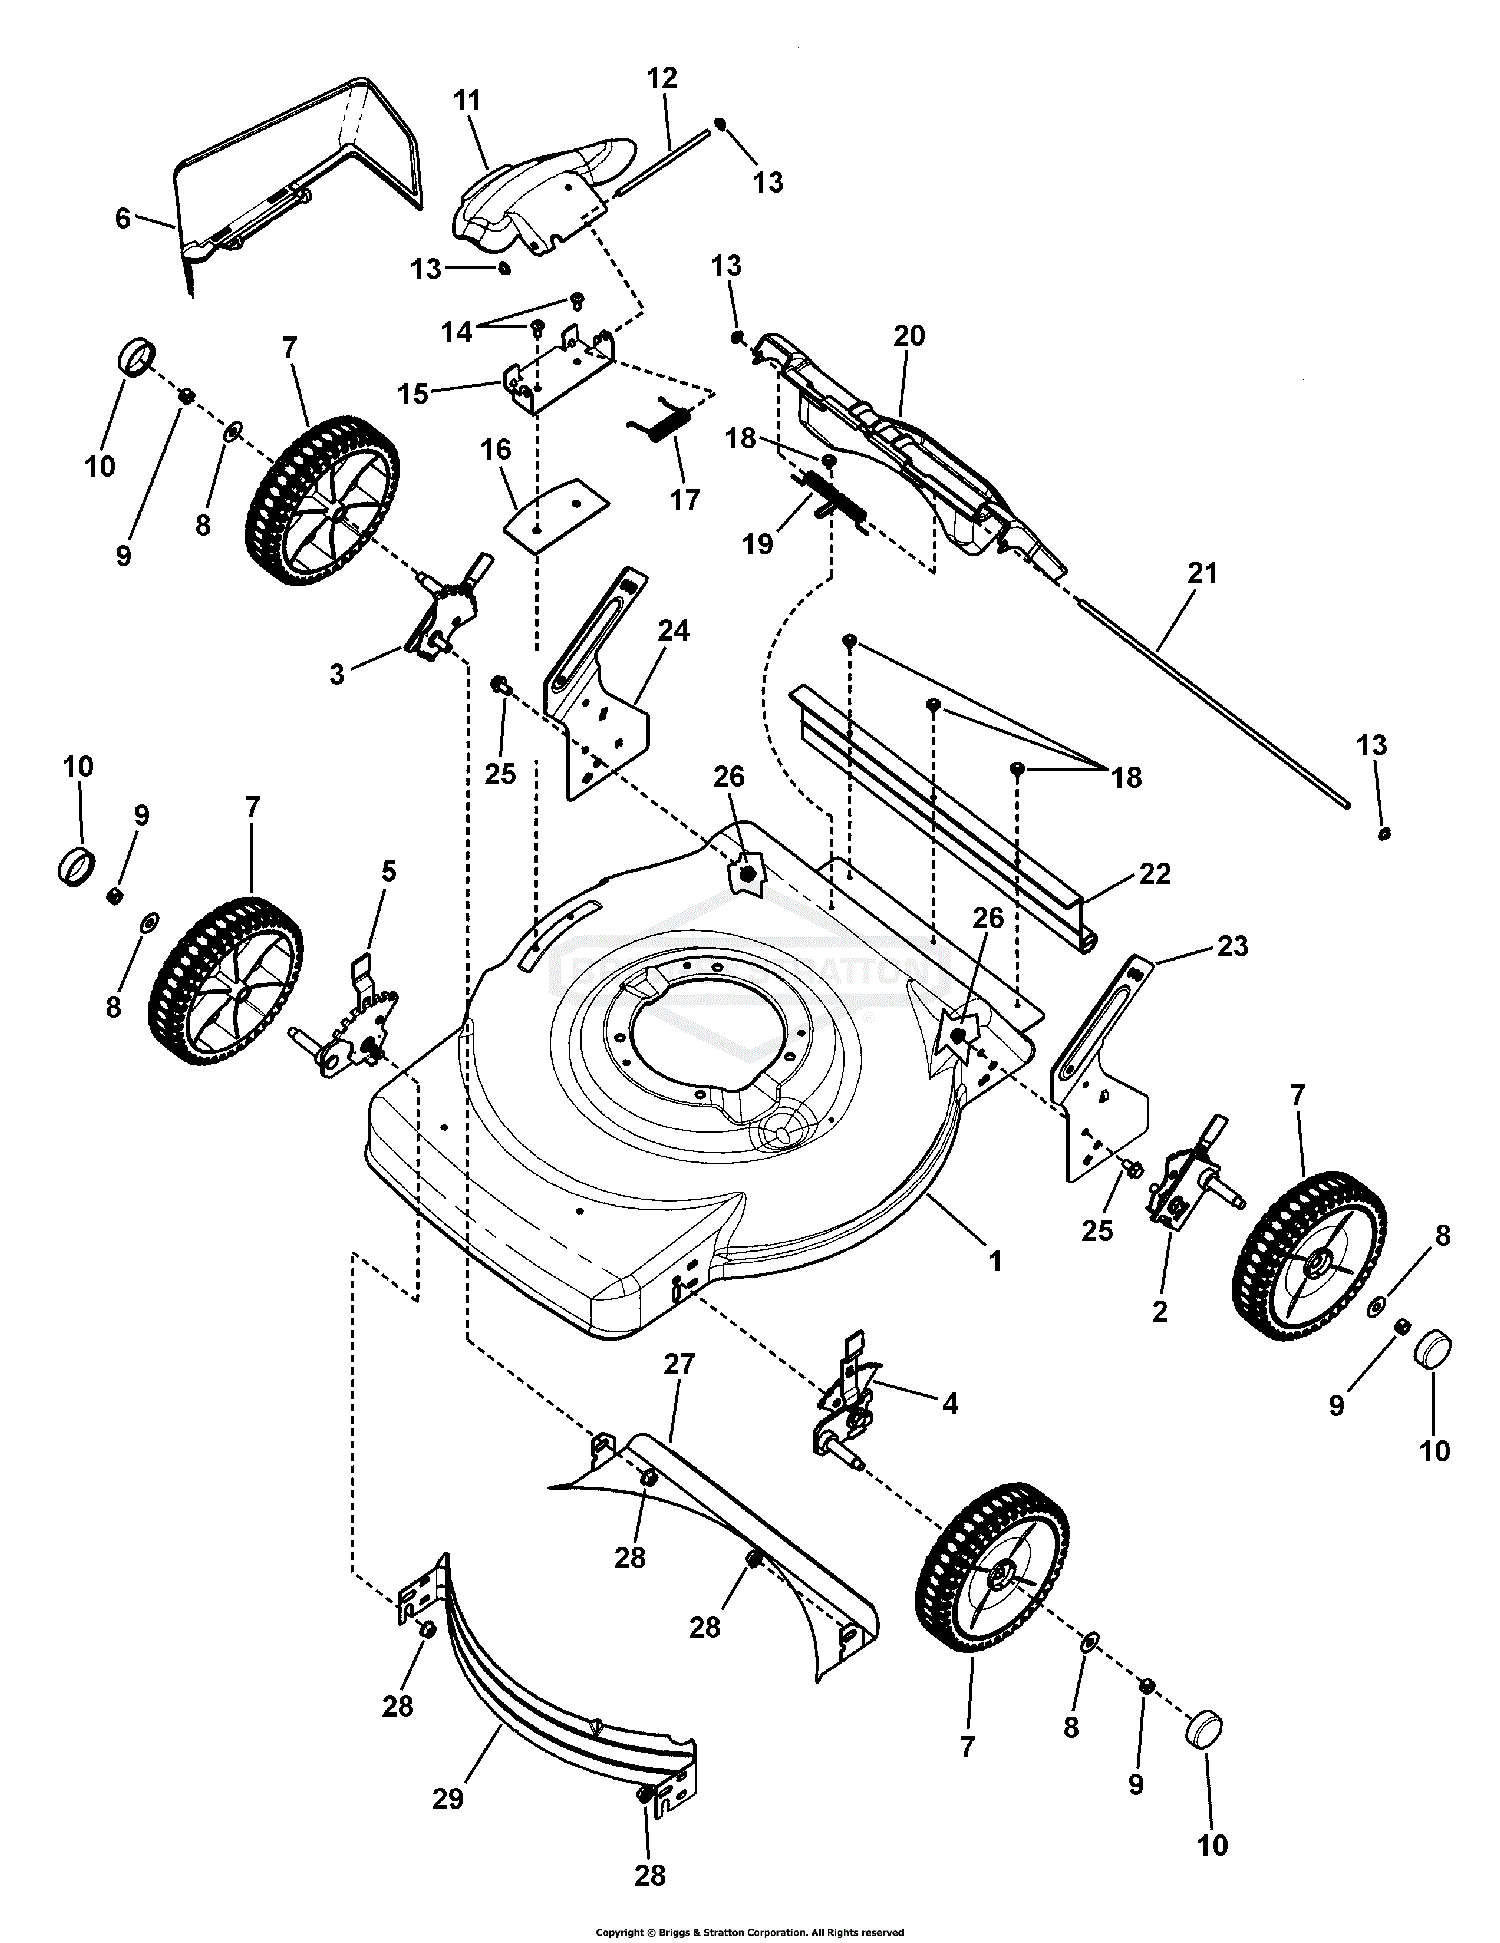 Murray 7800575 - LP7800575 - JS36, 22 John Deere RWD Walk Mower (2010) Parts  Diagrams